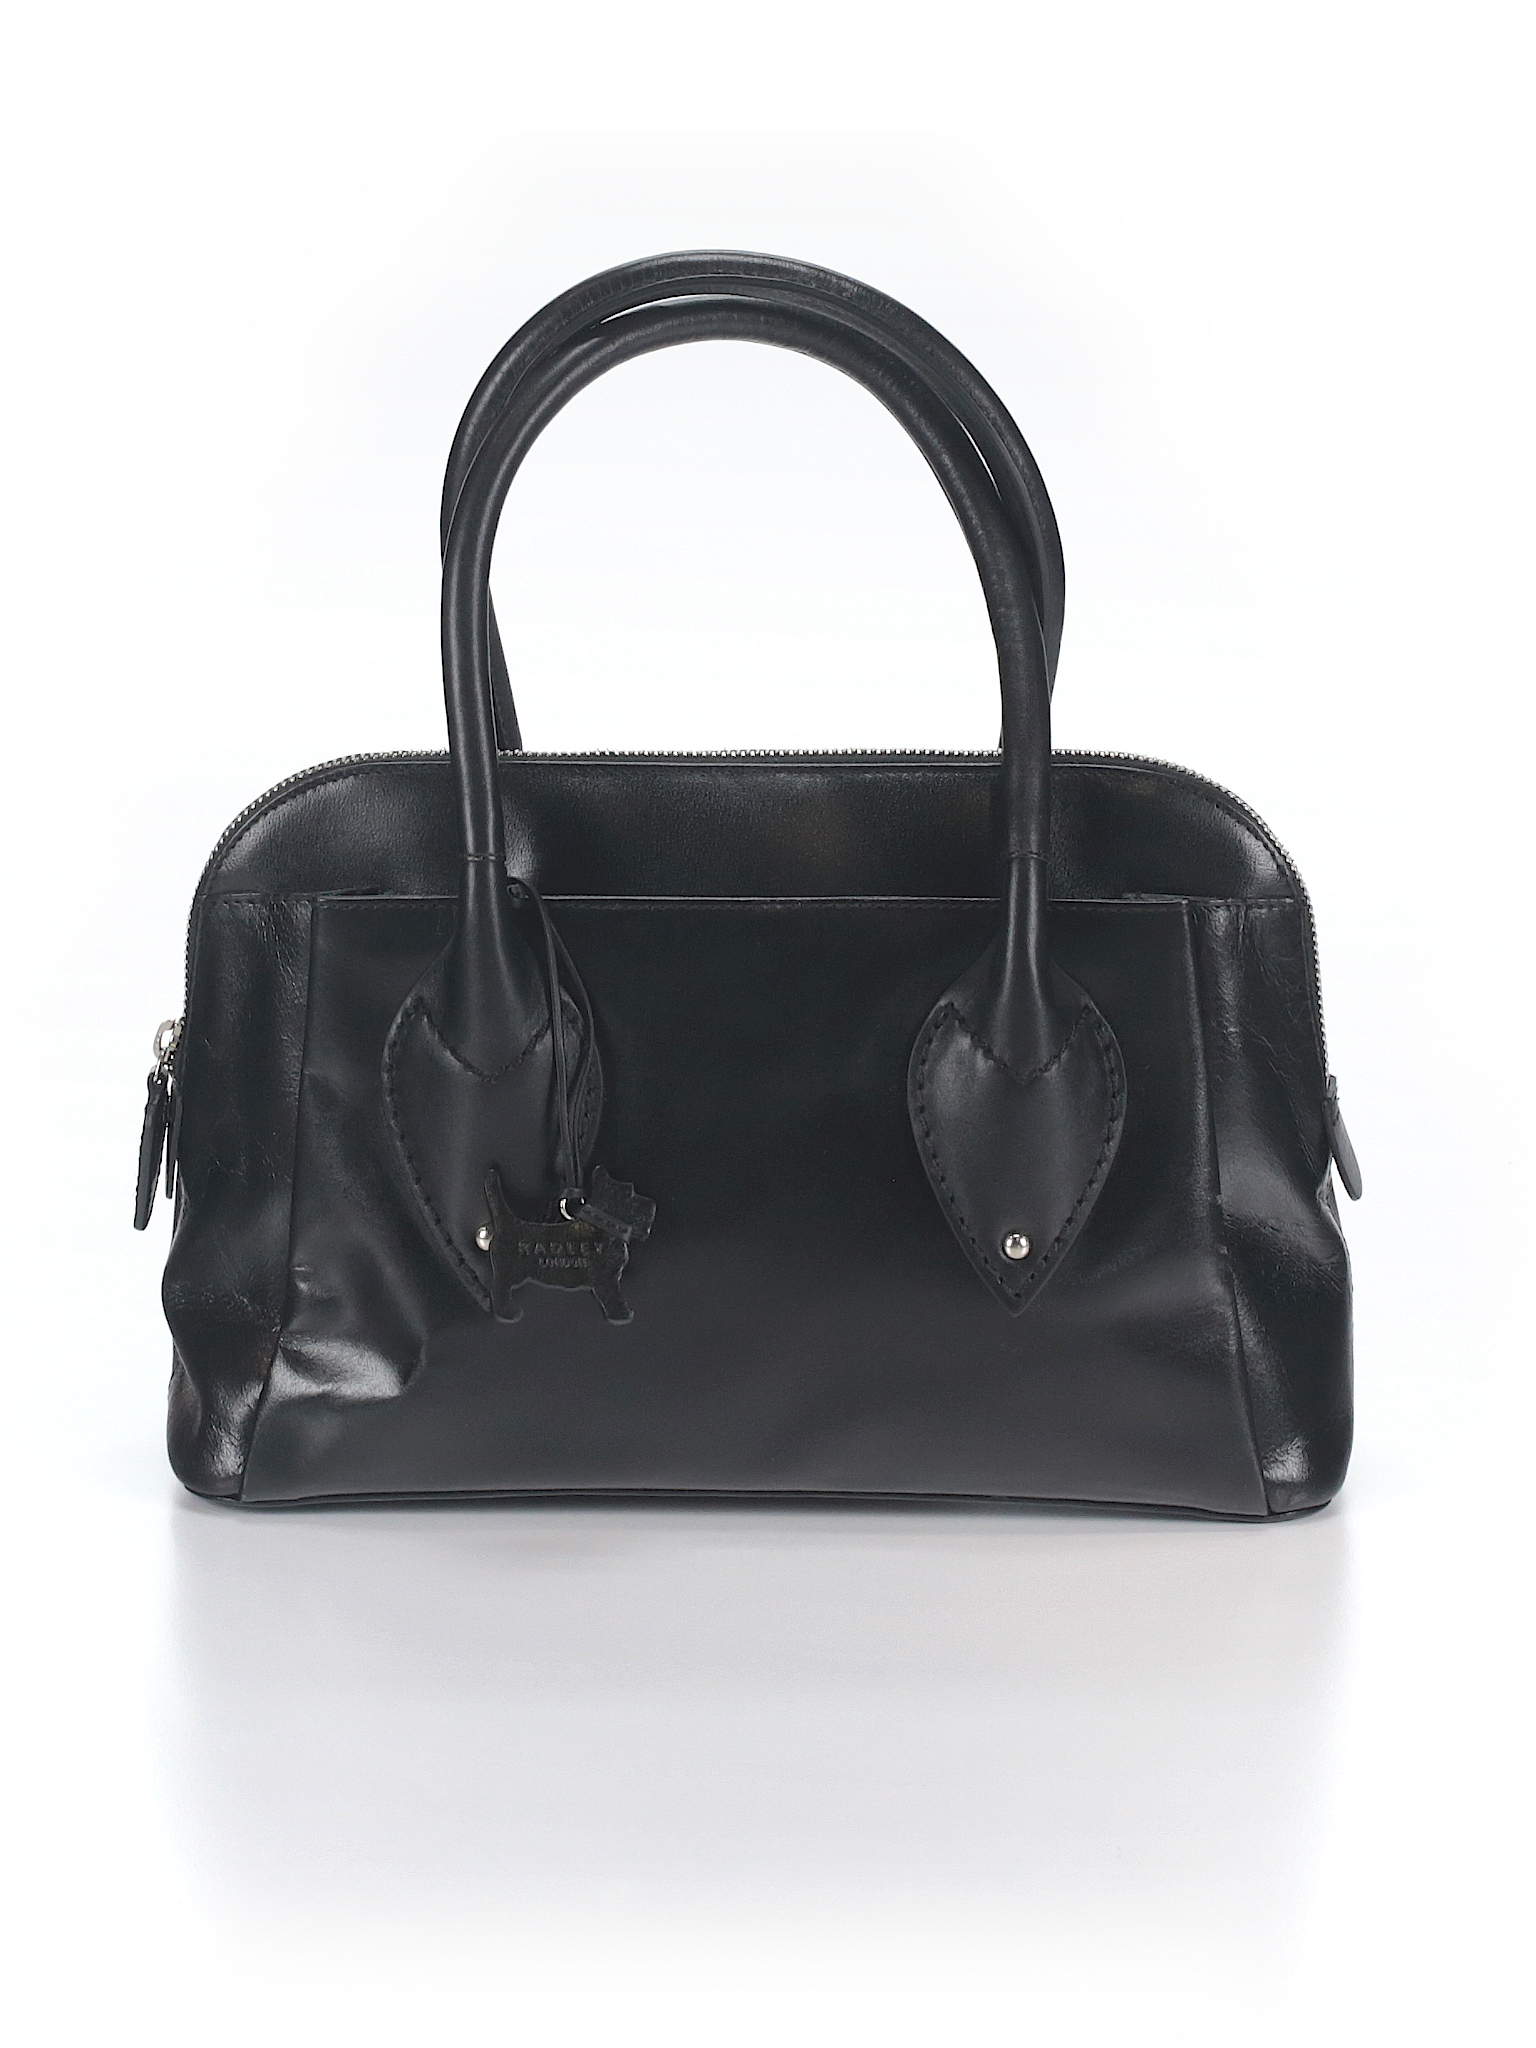 Radley London 100% Leather Solid Black Leather Shoulder Bag One Size ...